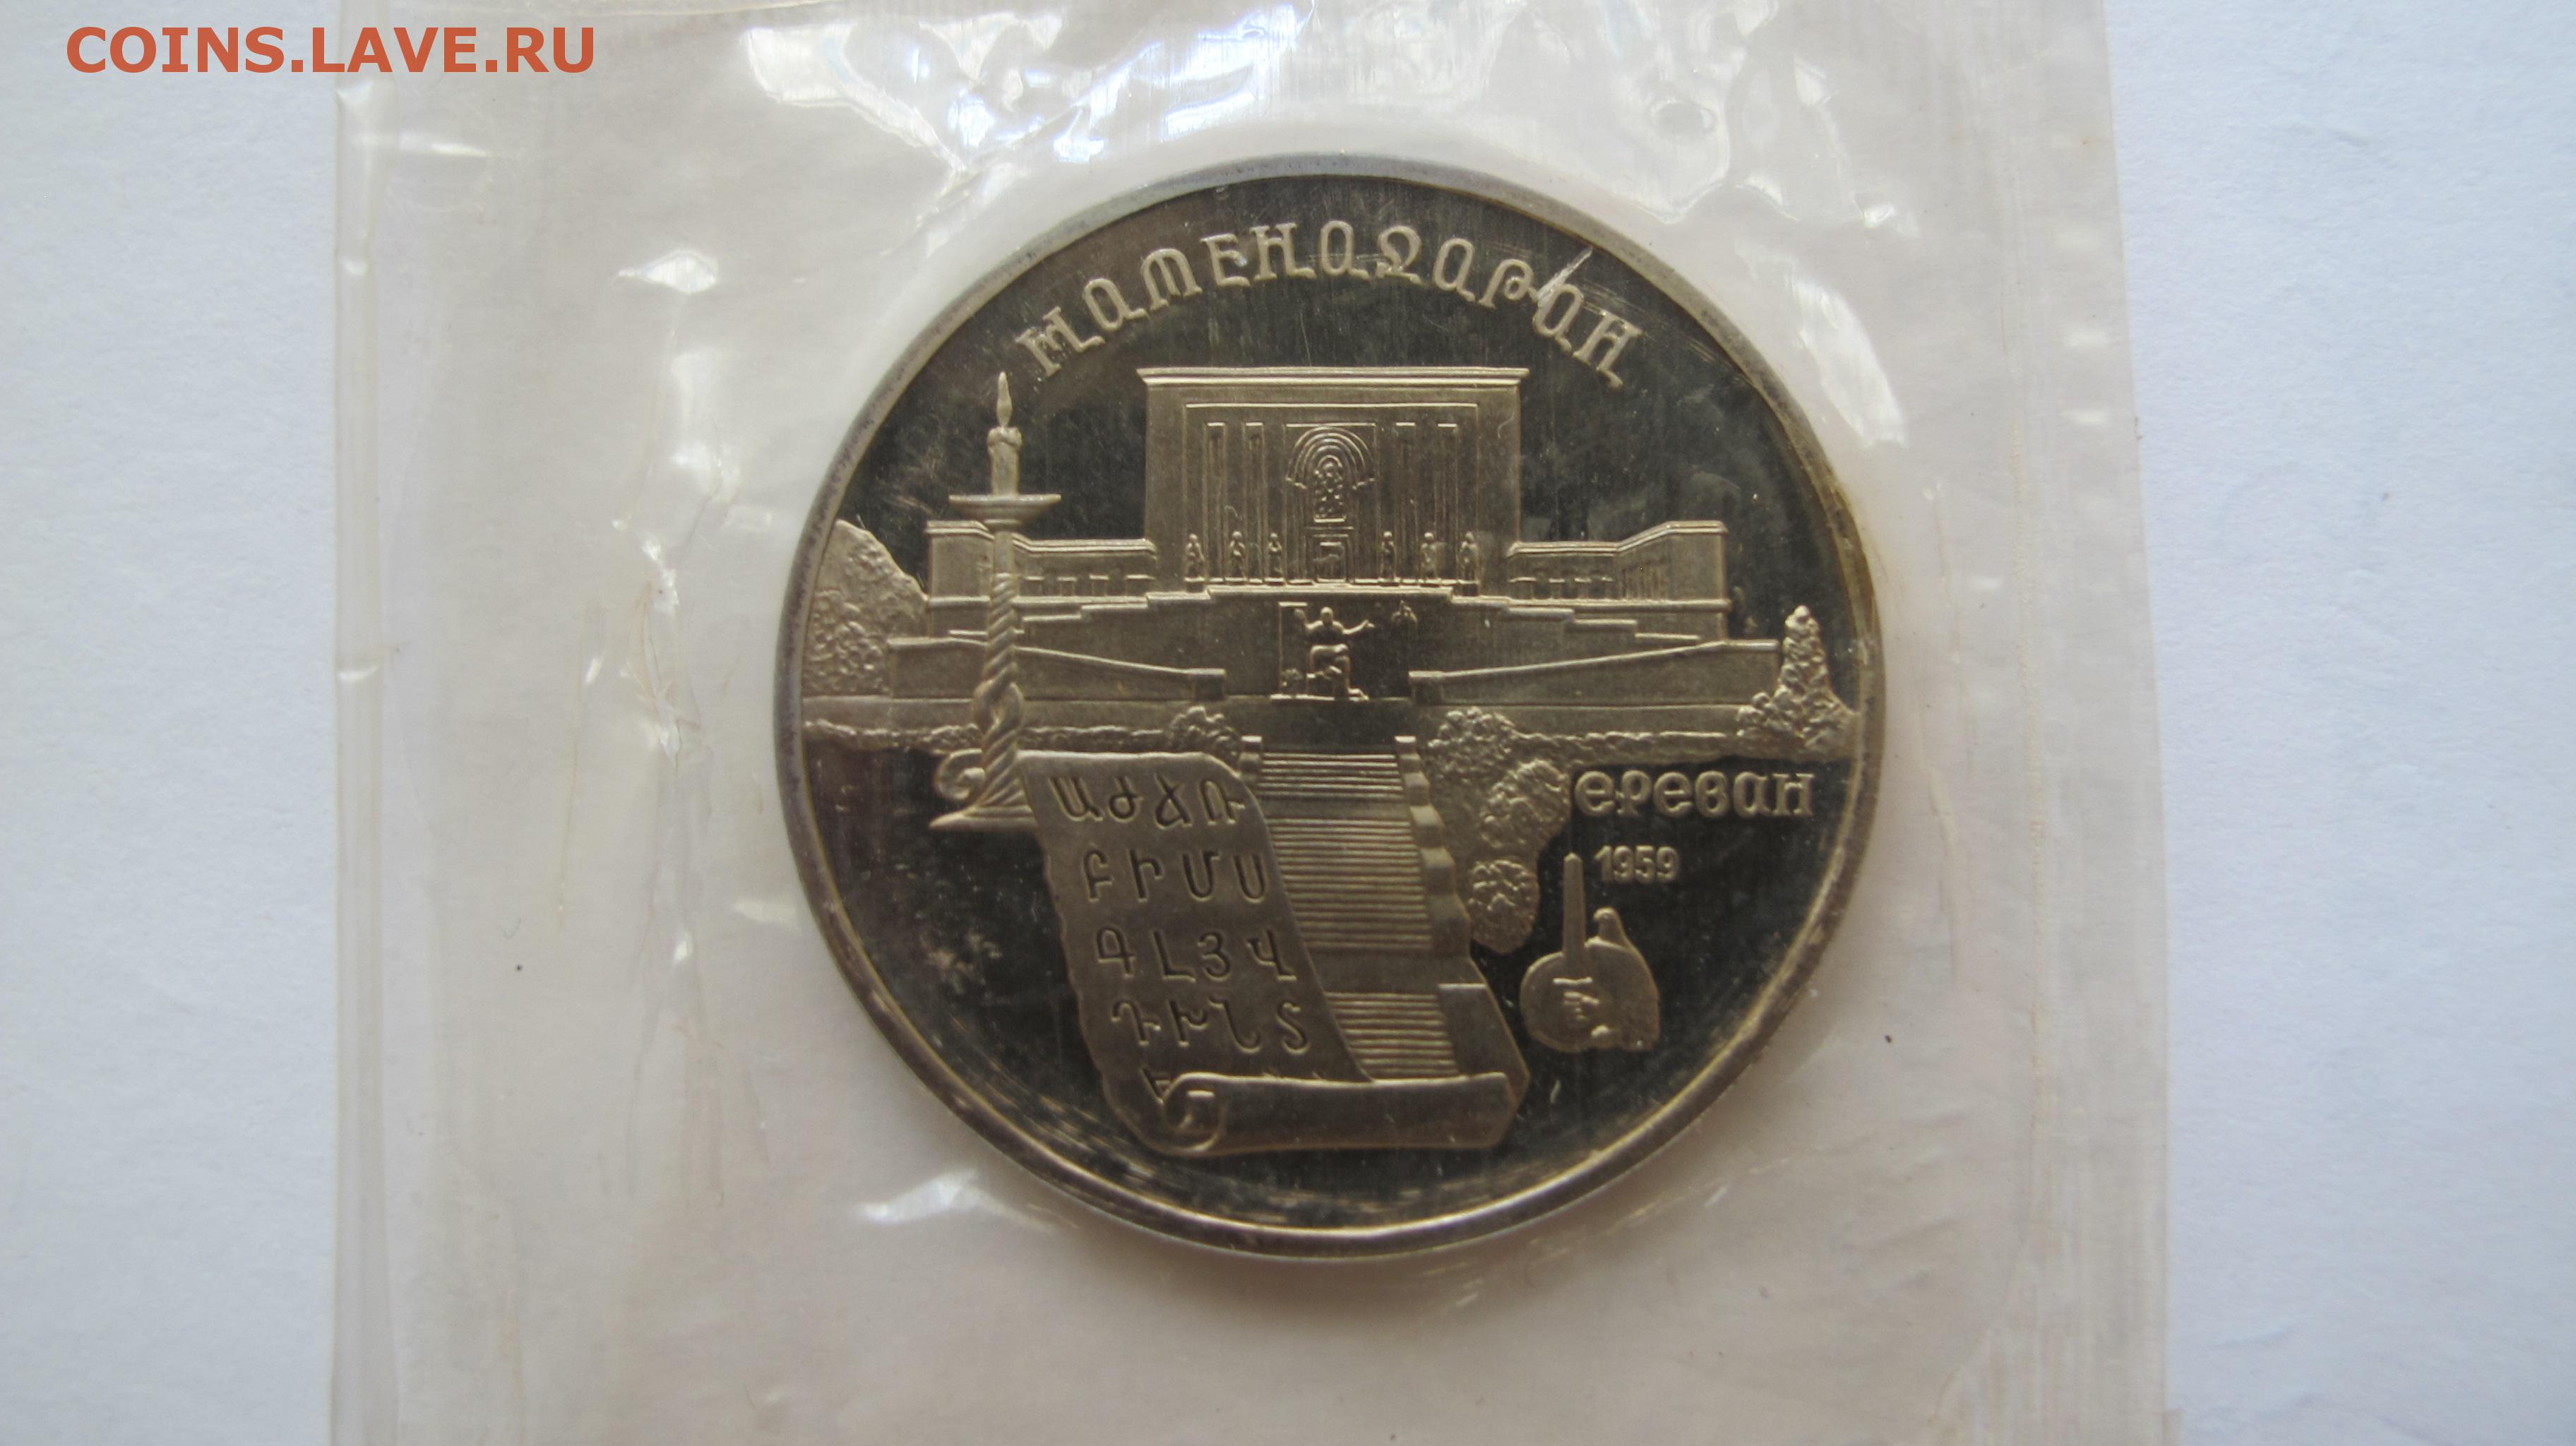 5 рублей новгород